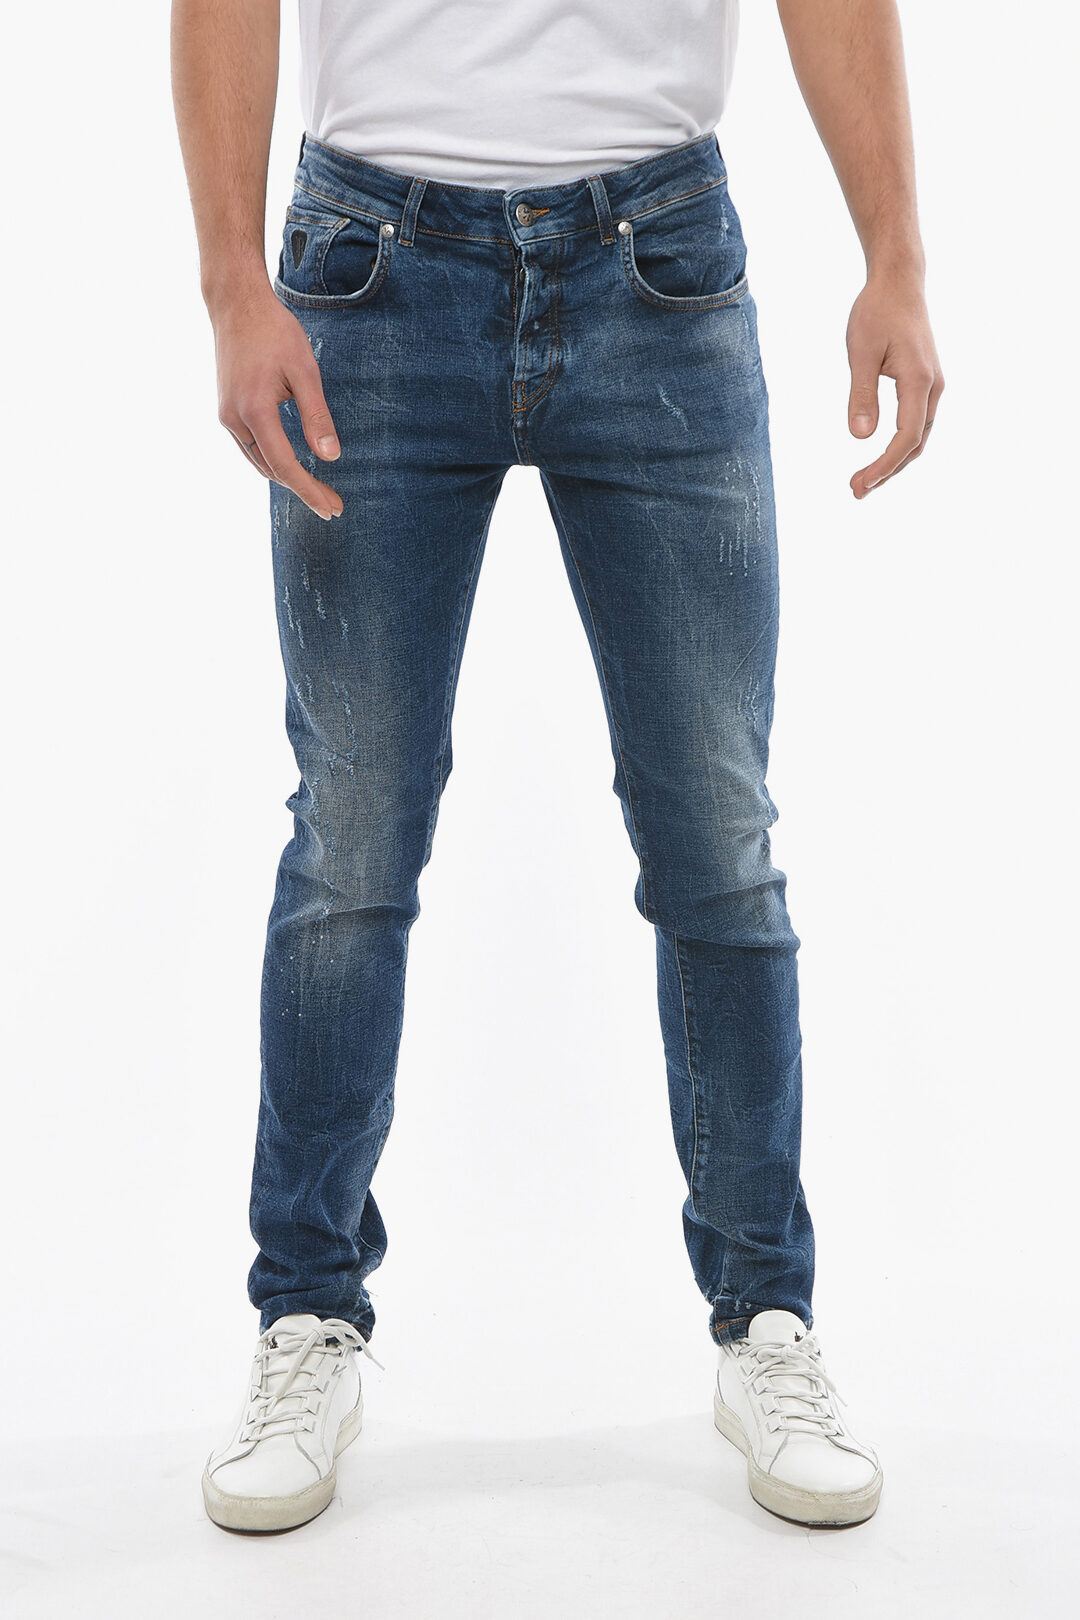 15,5cm Glamood Jeans Fit - John men Regular Outlet Vintage Effect Richmond